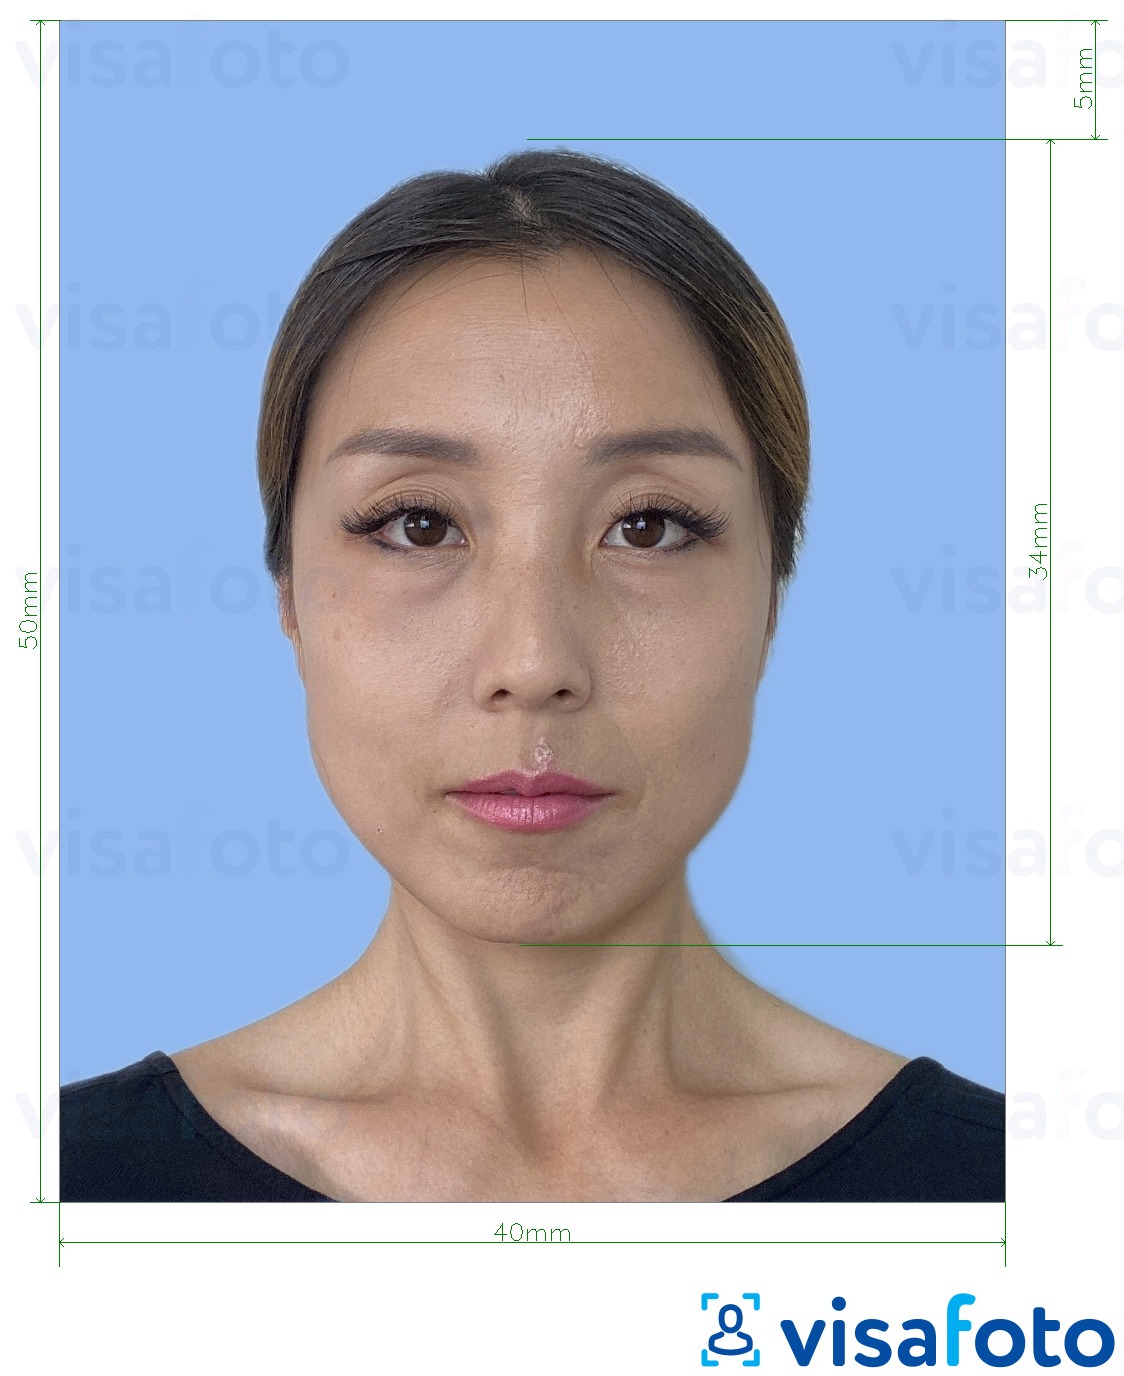 सटीक आकार विनिर्देश के साथ जापान विदेशी चालक का लाइसेंस 4x5 सेमी के लिए तस्वीर का उदाहरण